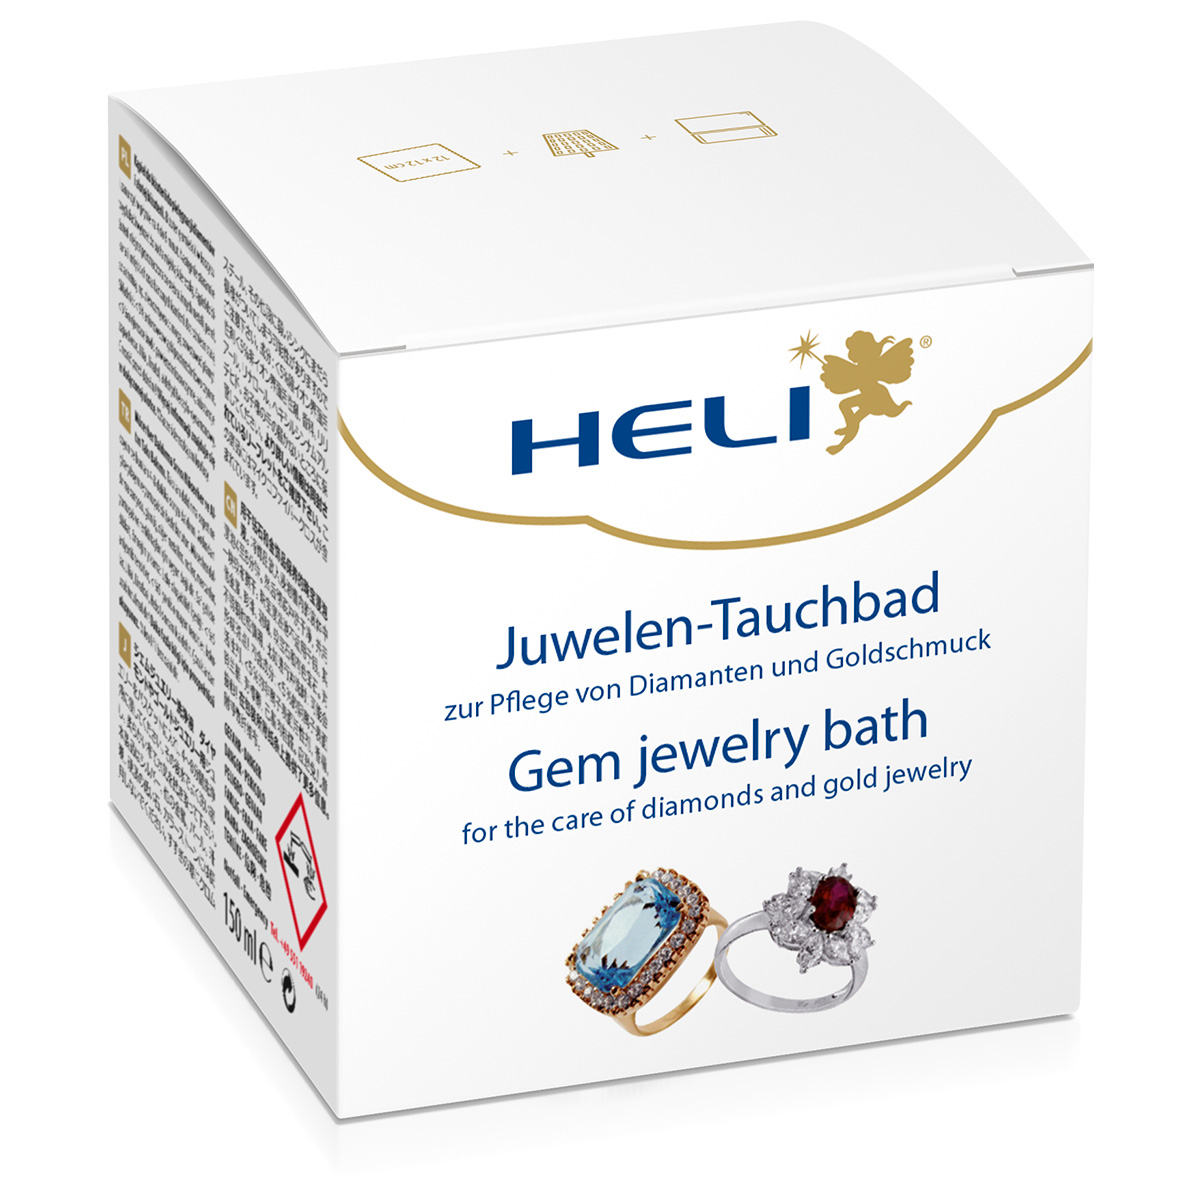 Heli Juwelentauchbad mit Waschkorb und Pflegetuch, Juweliersverpackung, 150 ml